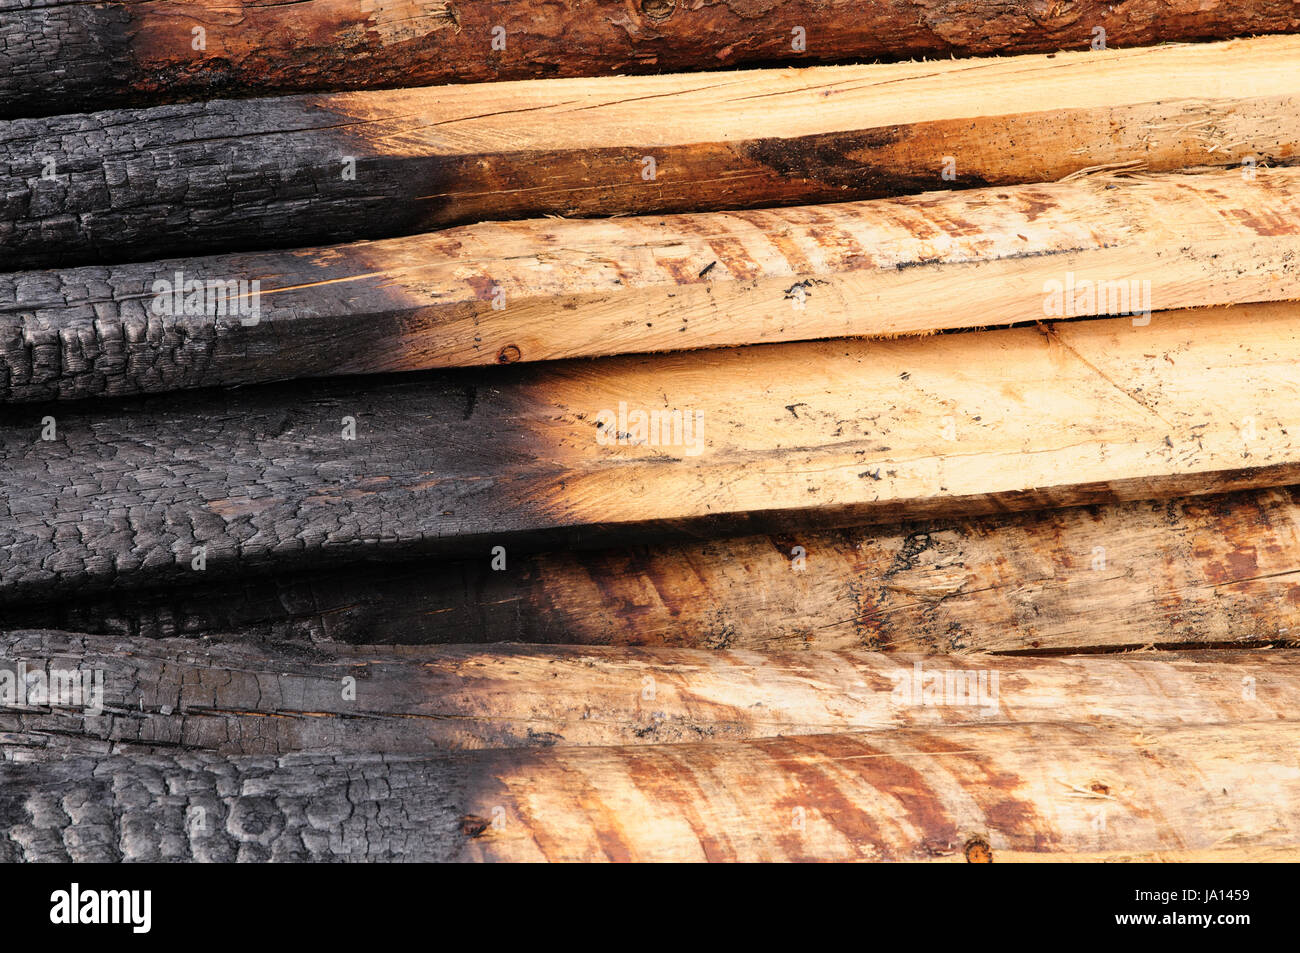 Holz, Balken, schwarz, dunkelhäutigen, tiefschwarze, tiefschwarz,  Holzkohle, Tafelbutter, verbrannt Stockfotografie - Alamy